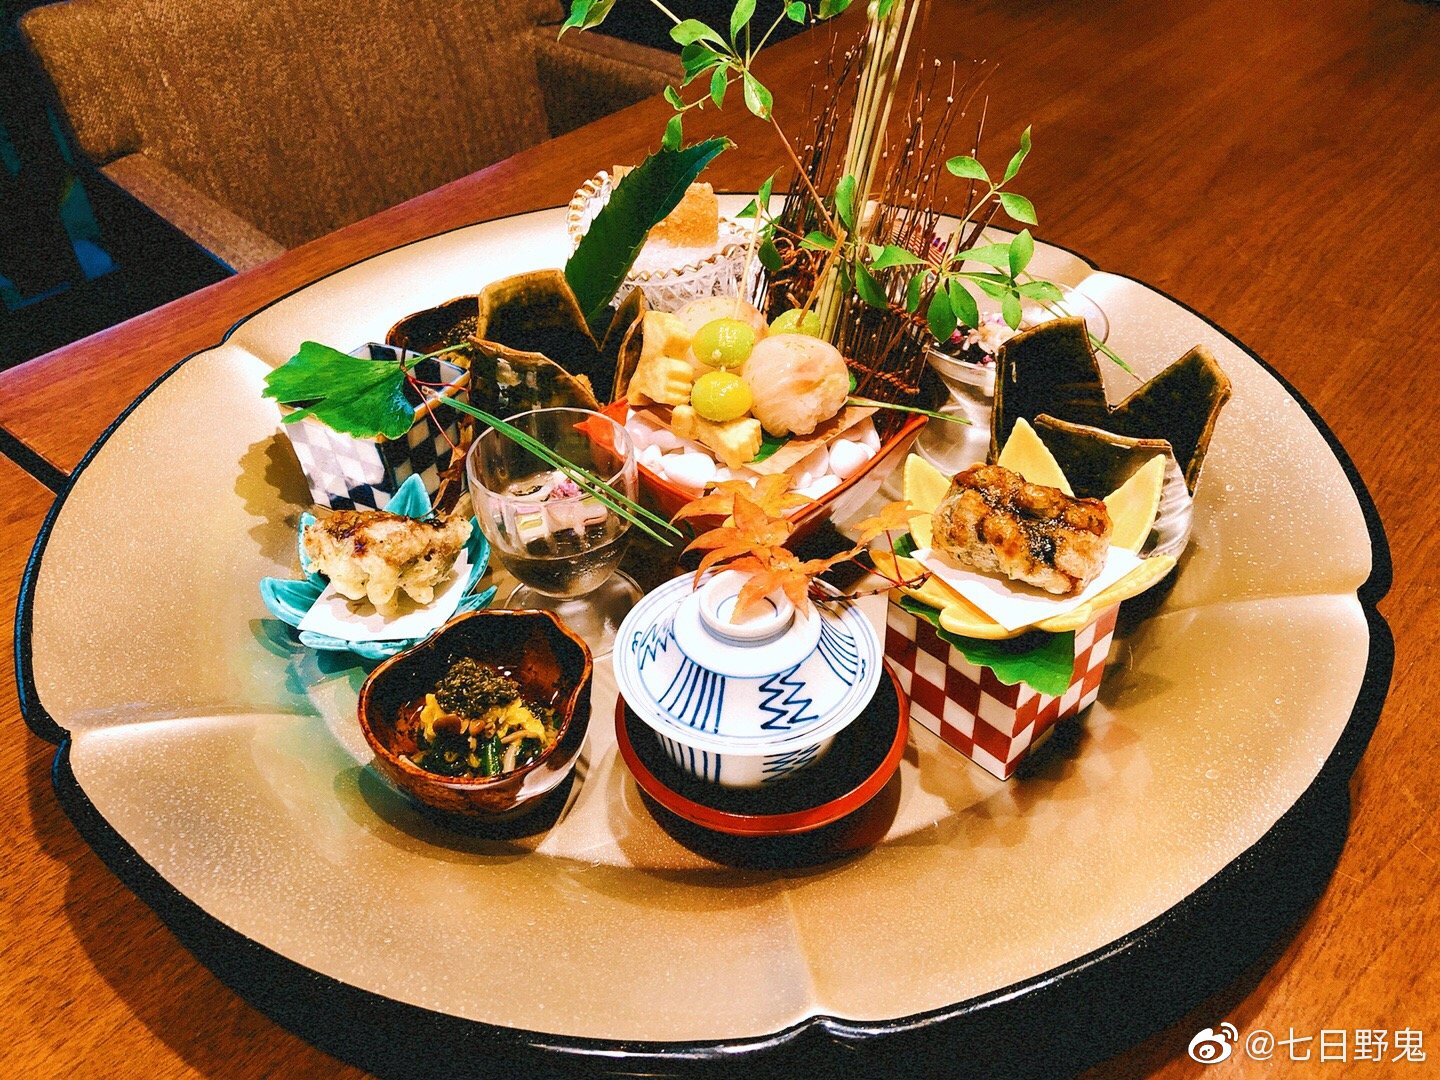 【京都】小学校の給食に月に一度『和食の日』を制定、京都の伝統野菜、伝統料理が献立に | 号外NET 京都市上京区・中京区・下京区